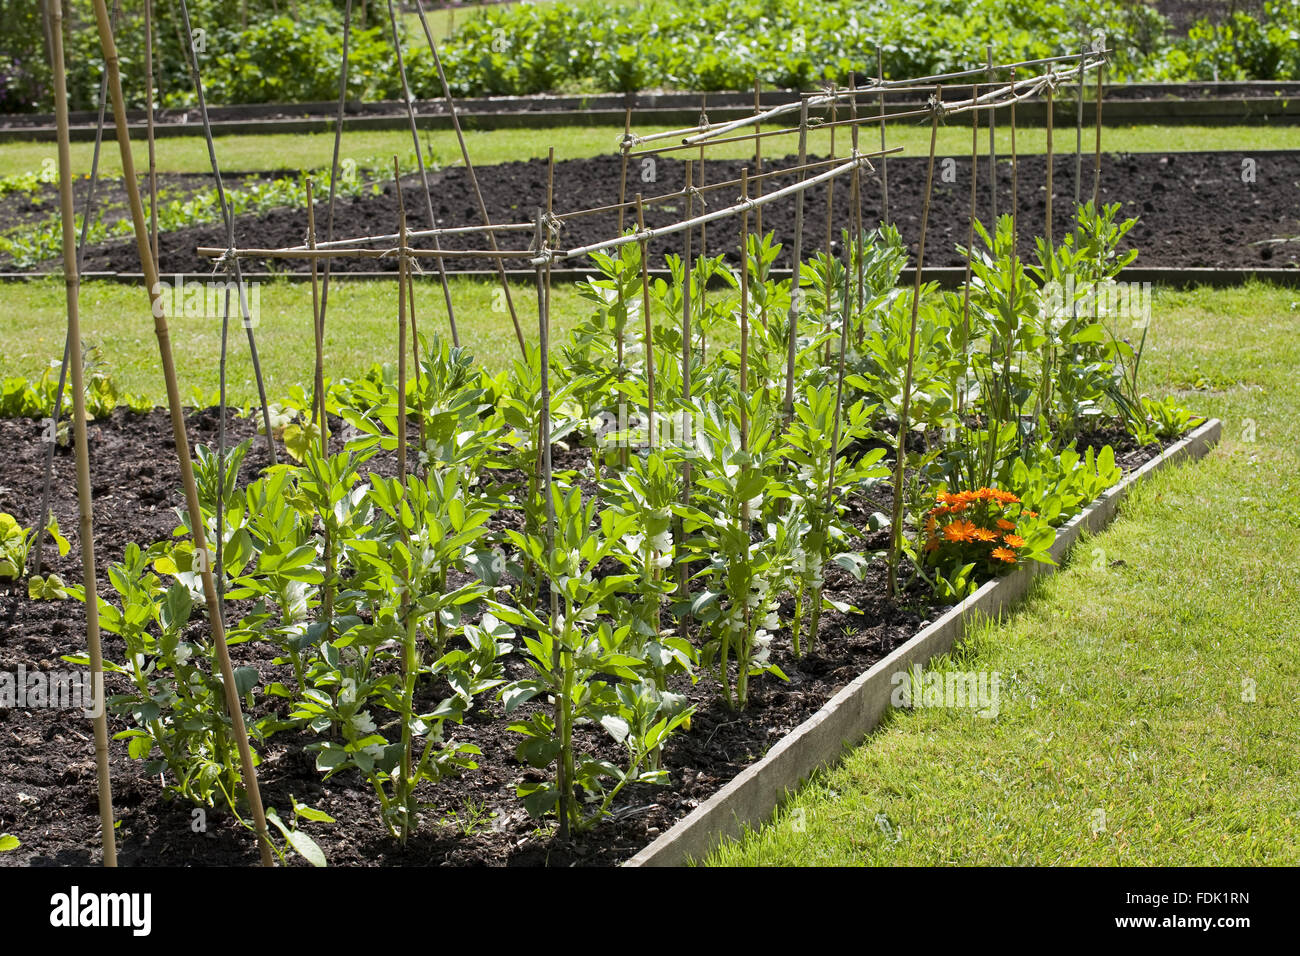 Dicke Bohnen im Juni in den Walled Garden umfasst 4 Hektar auf Gibside, Newcastle Upon Tyne. Gemüse wachsen organisch in den Walled Garden. Stockfoto